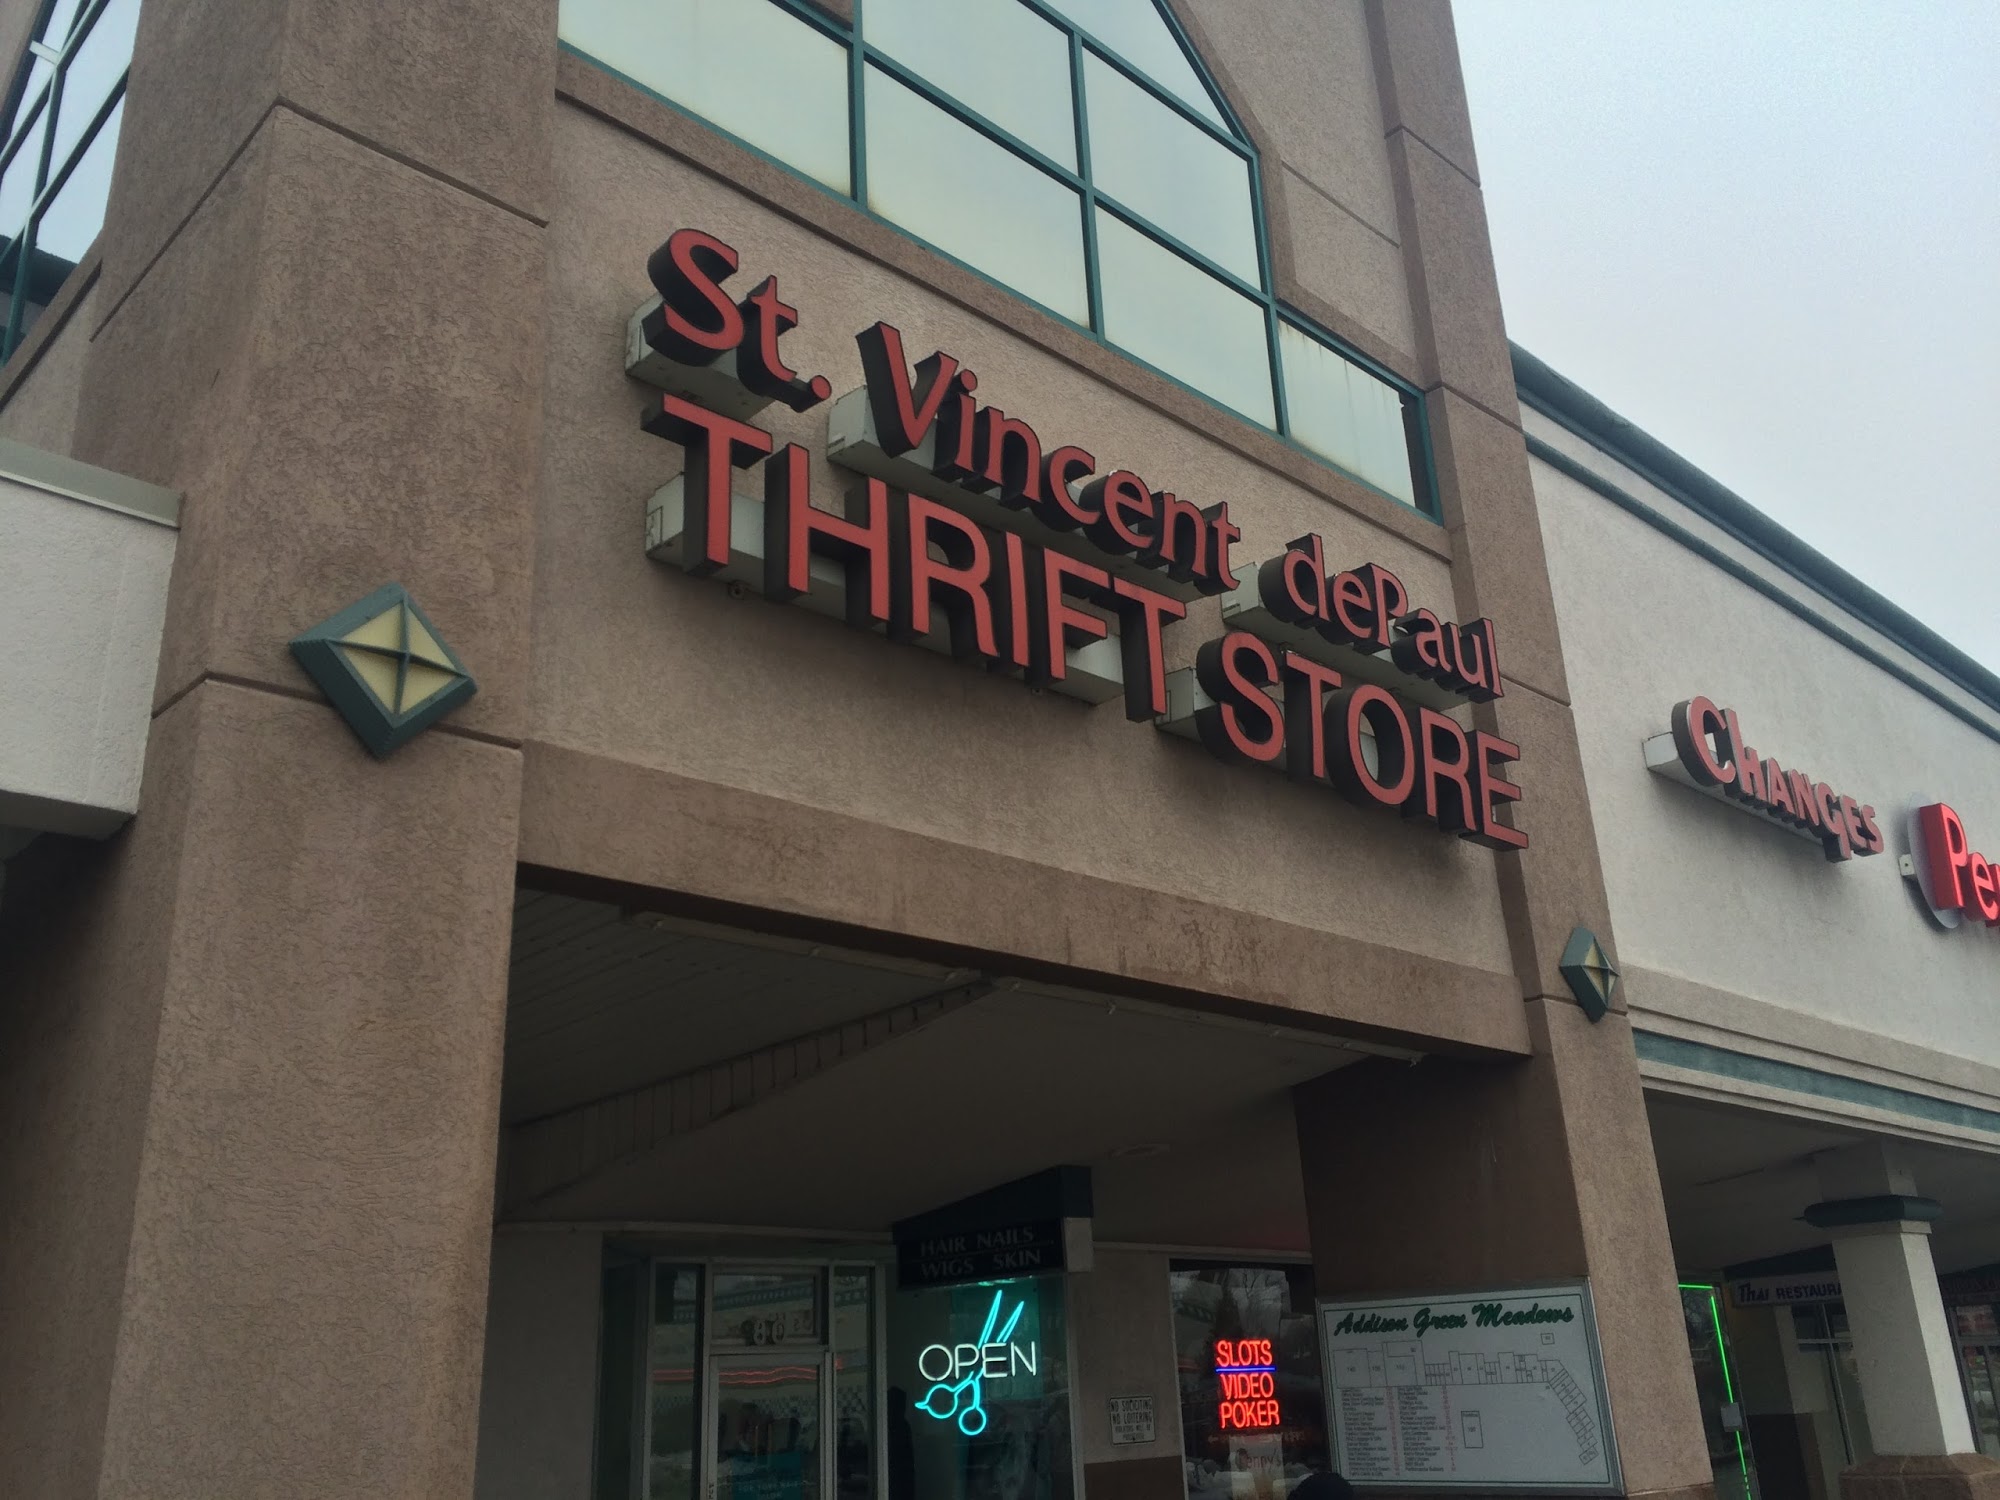 St. Vincent de Paul Society Thrift Store